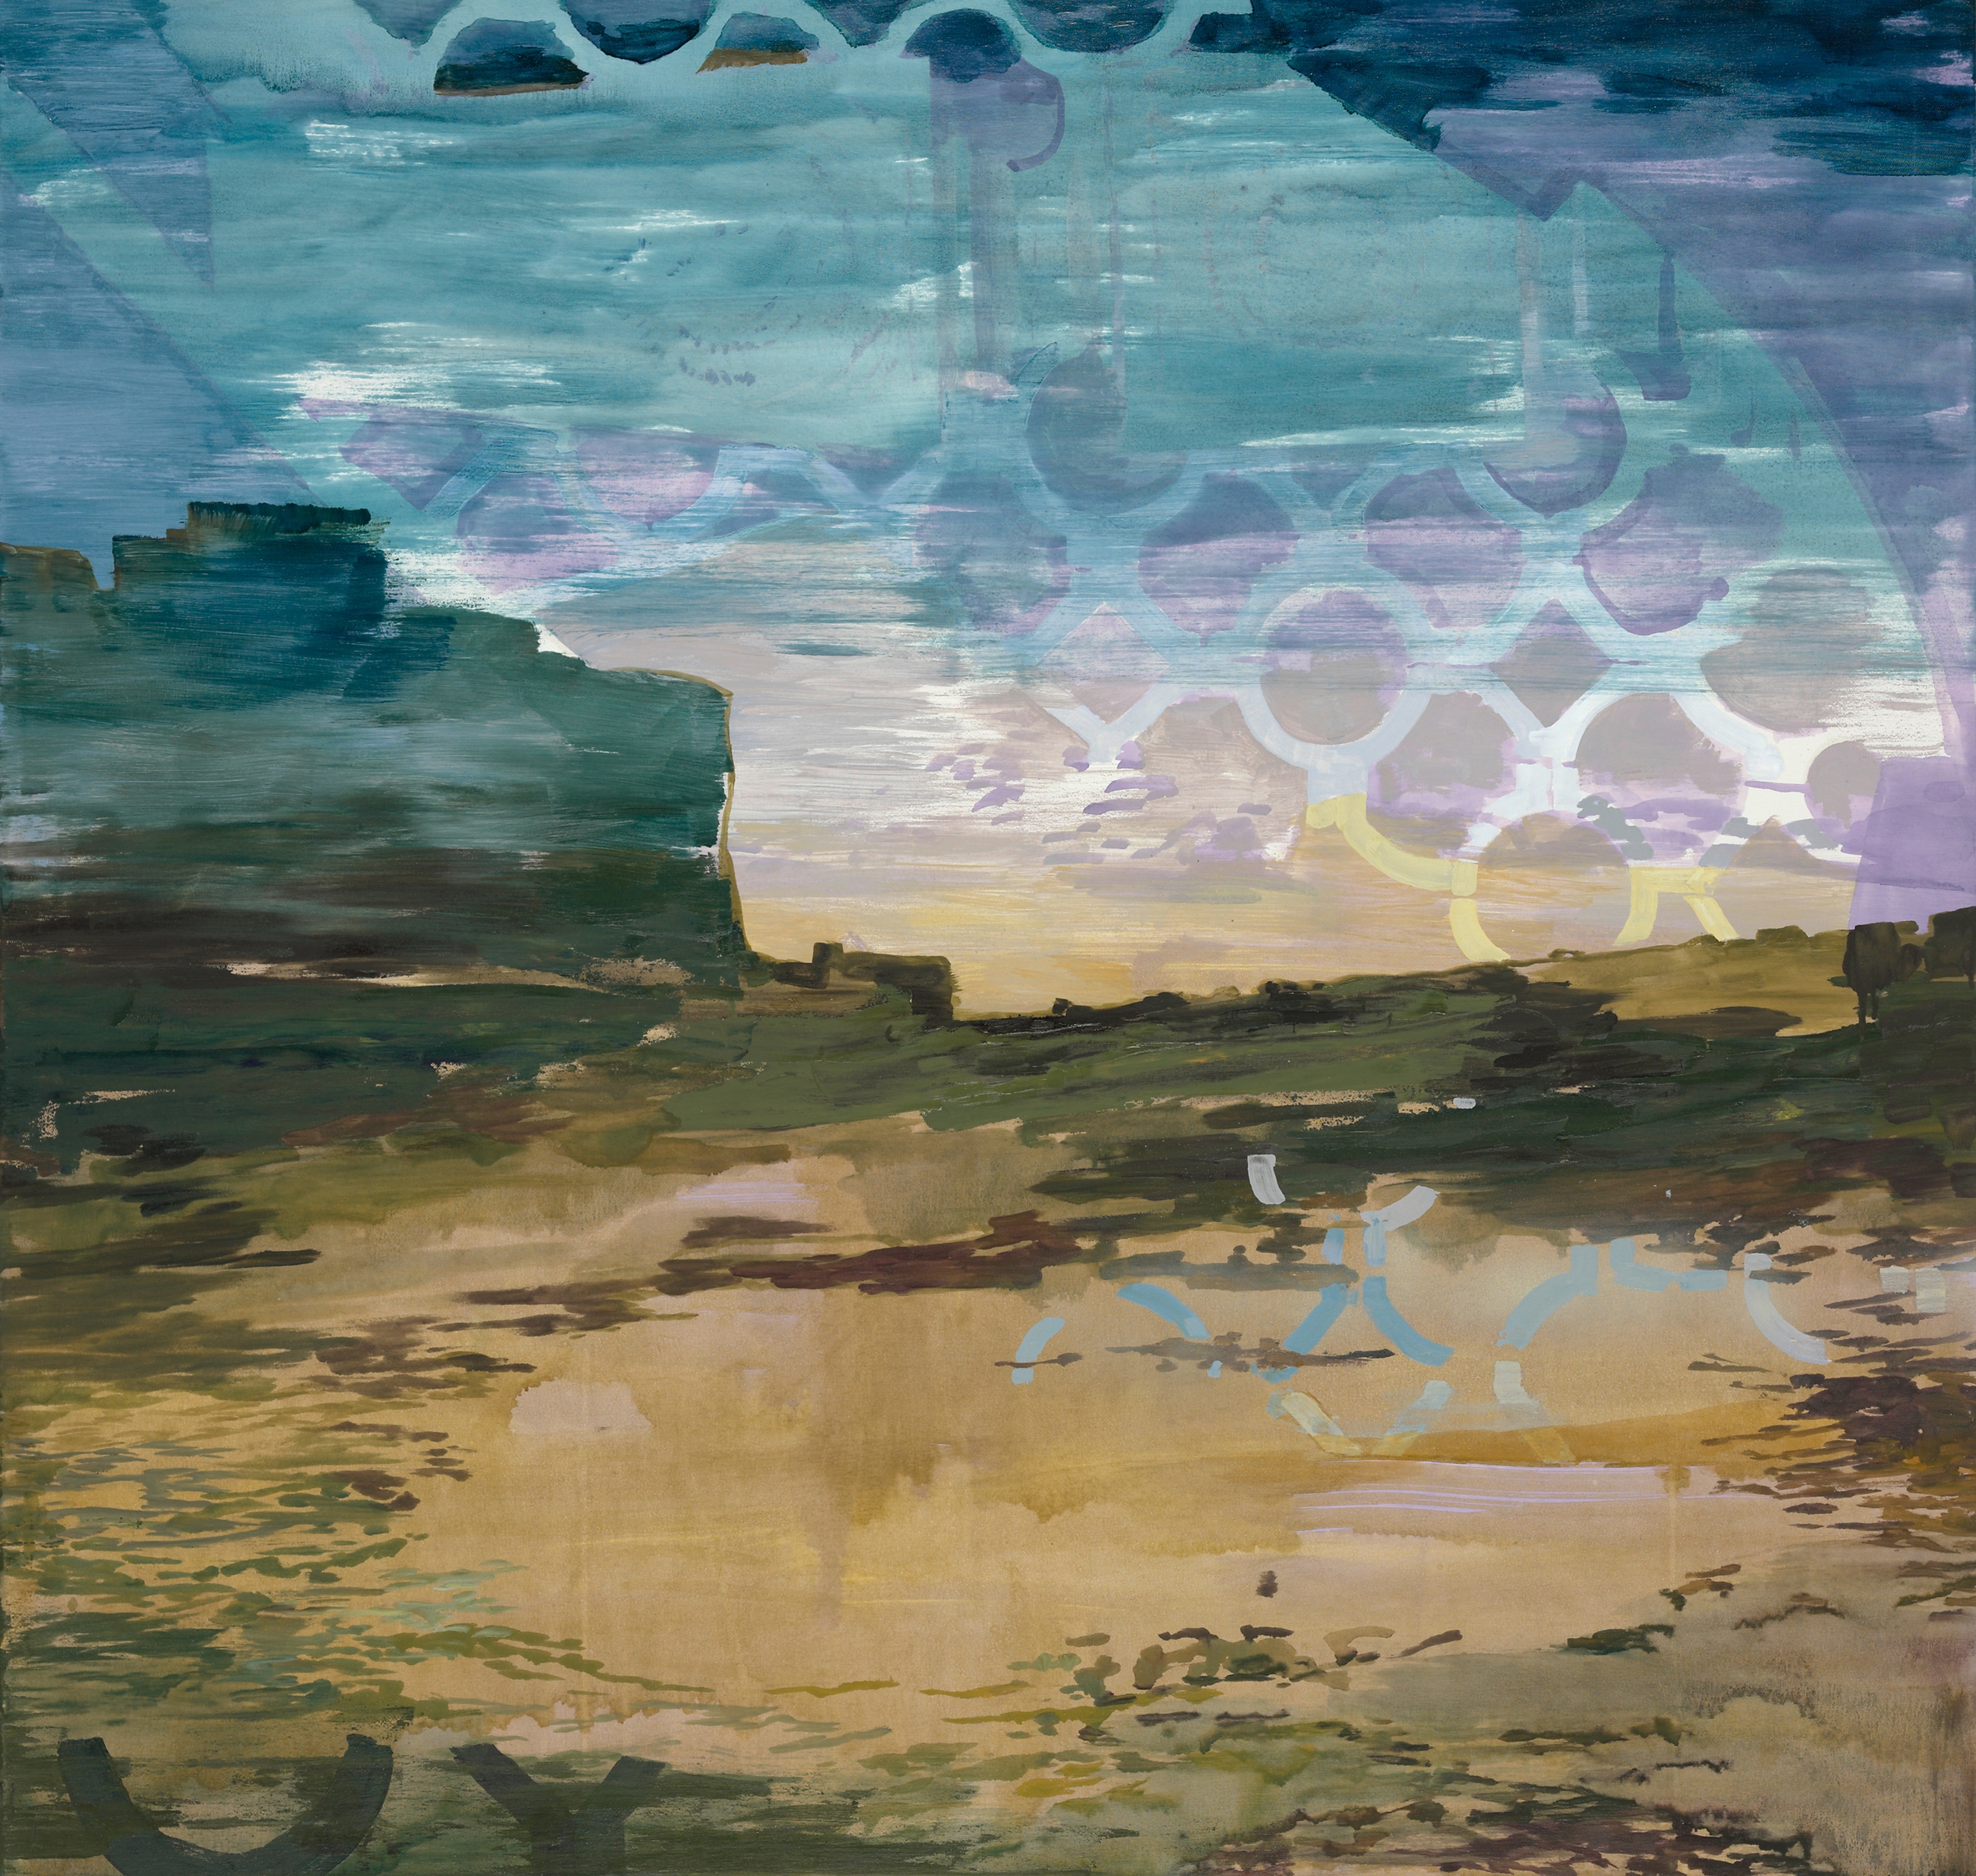 Gitter, 2009, 125 x 120 cm, oil on canvas